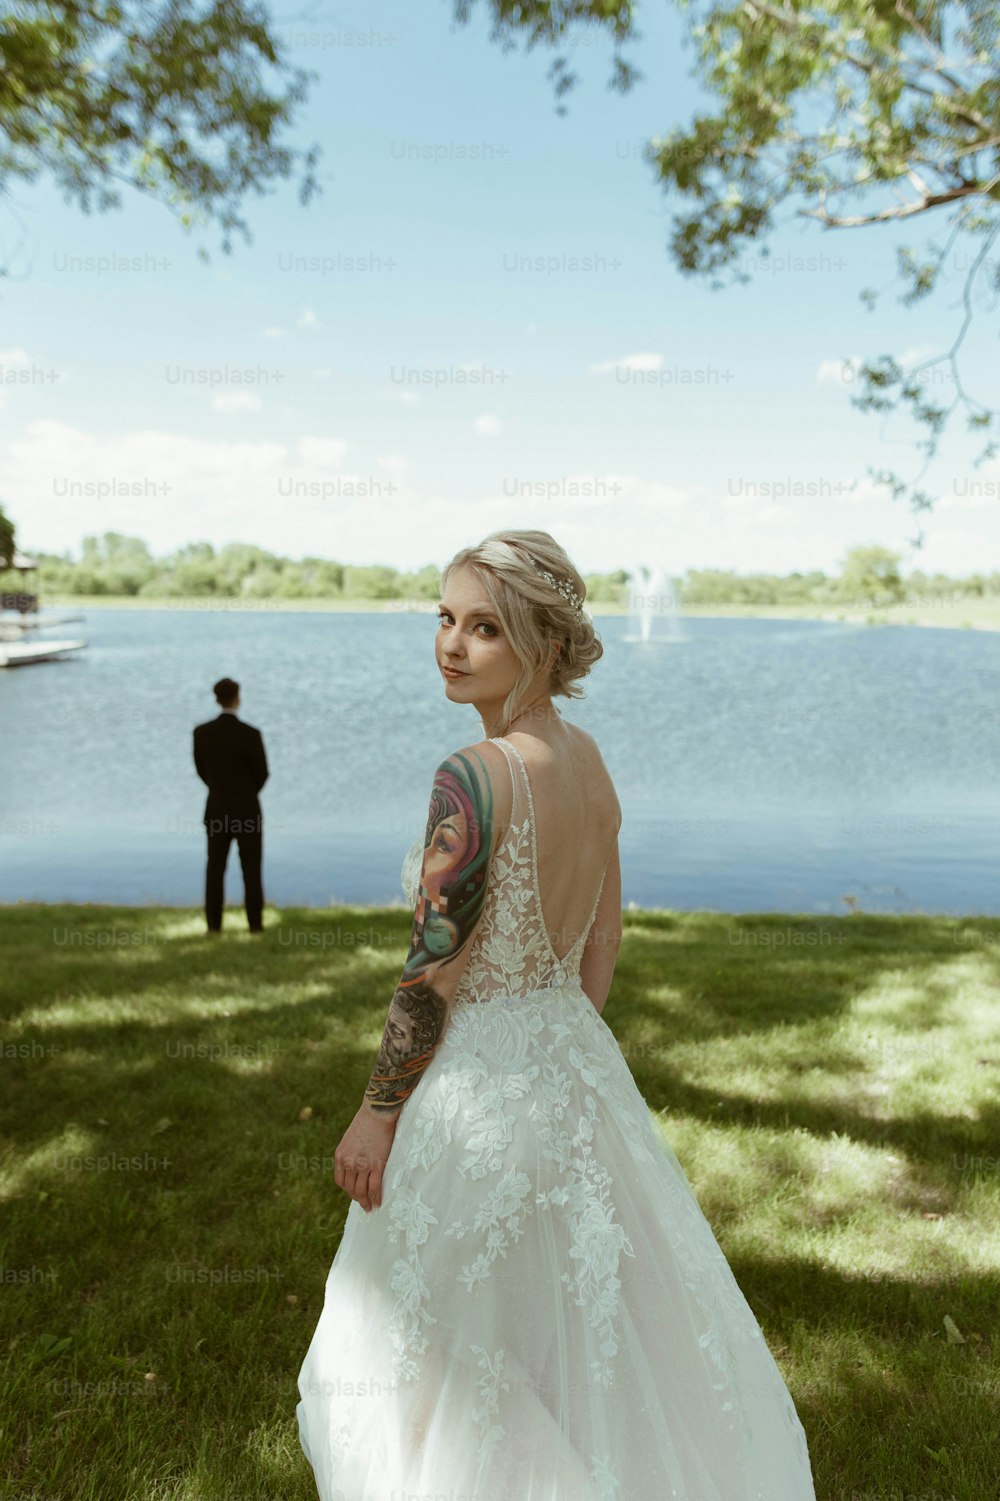 Eine Frau im Brautkleid steht vor einem See